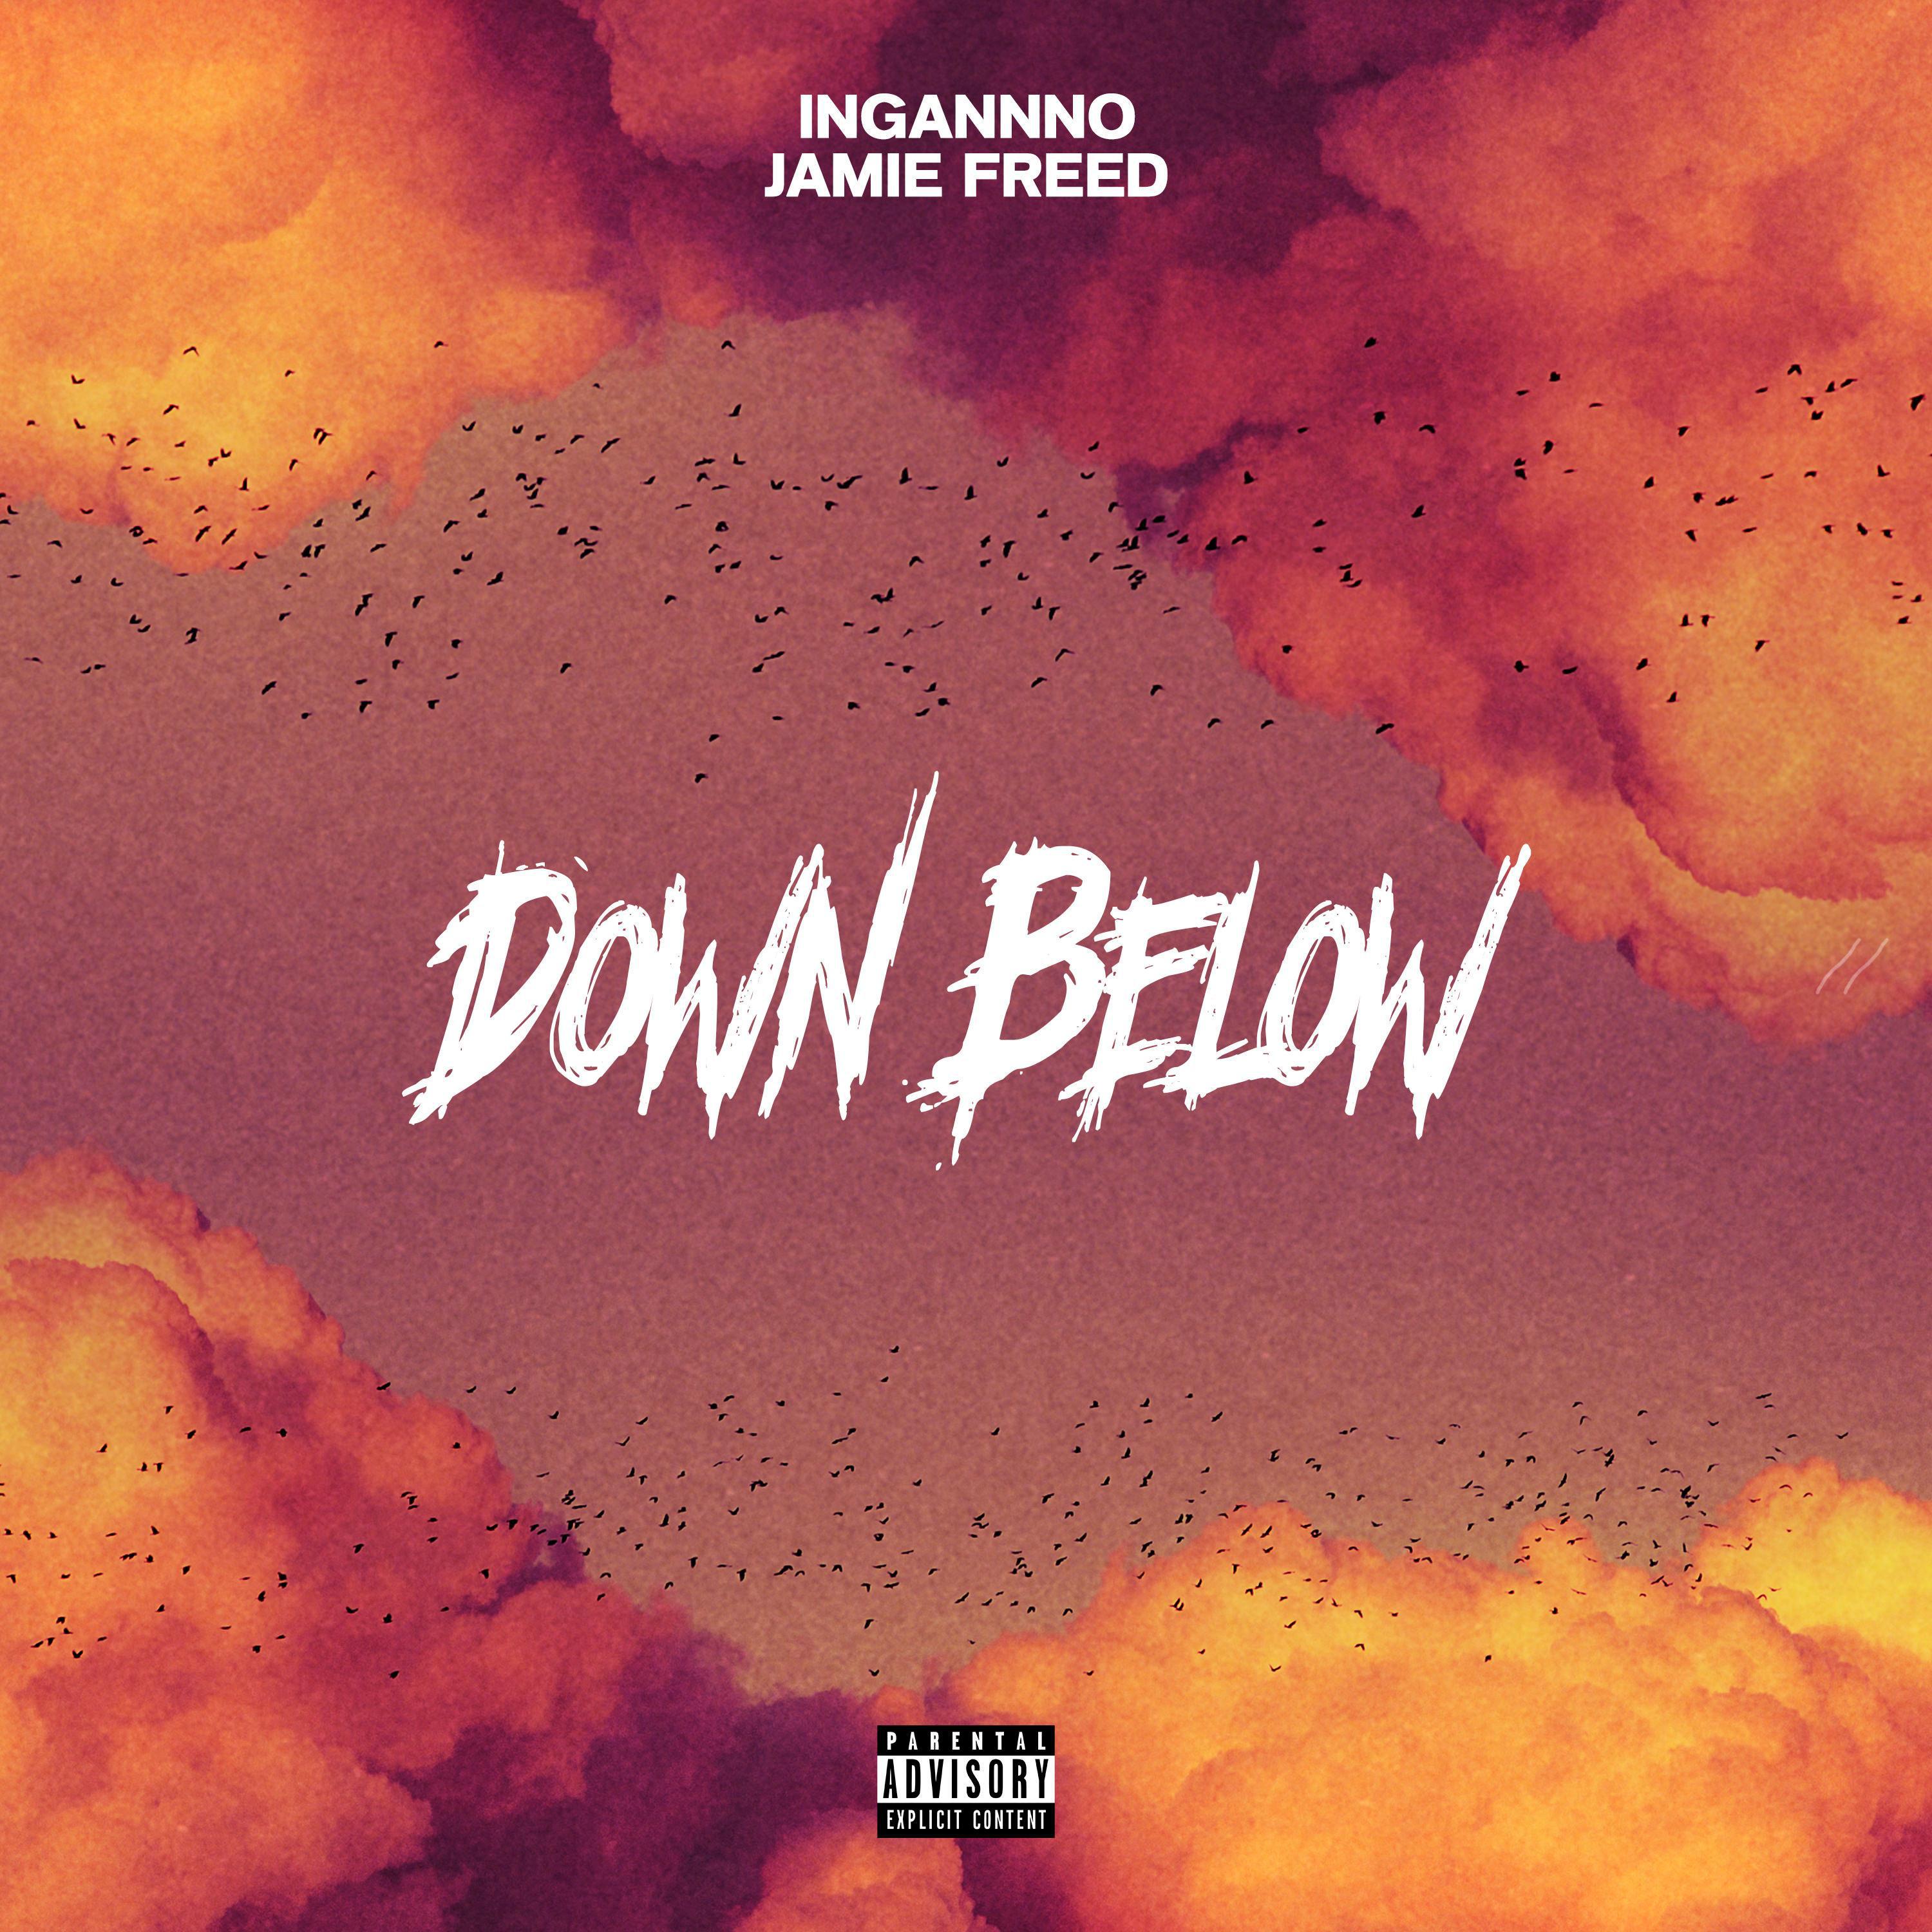 Ingannno - Down Below